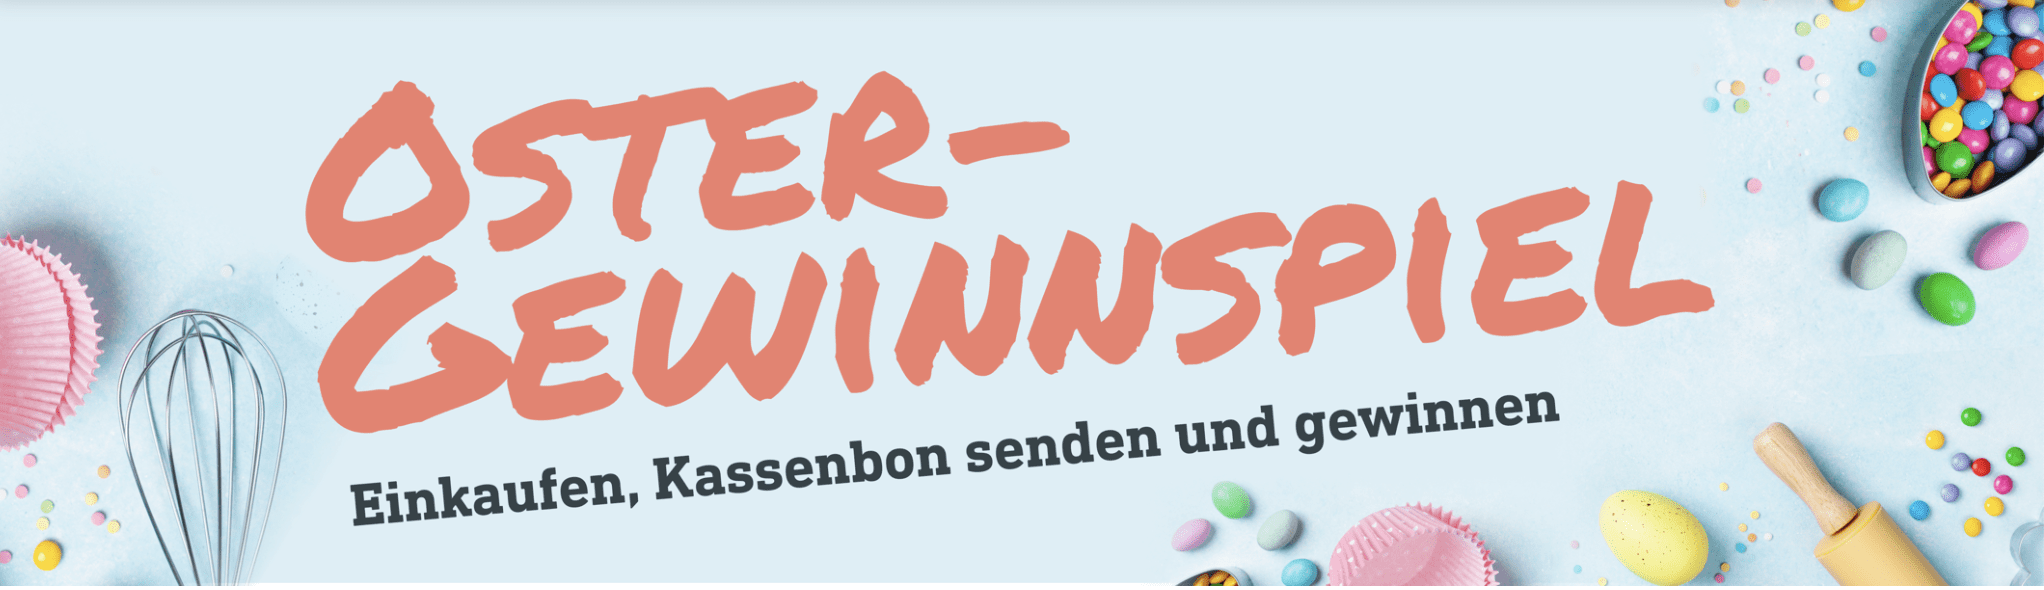 case_diska Oster-Gewinnspiel – Einkaufen, Kassenbon senden, gewinnen